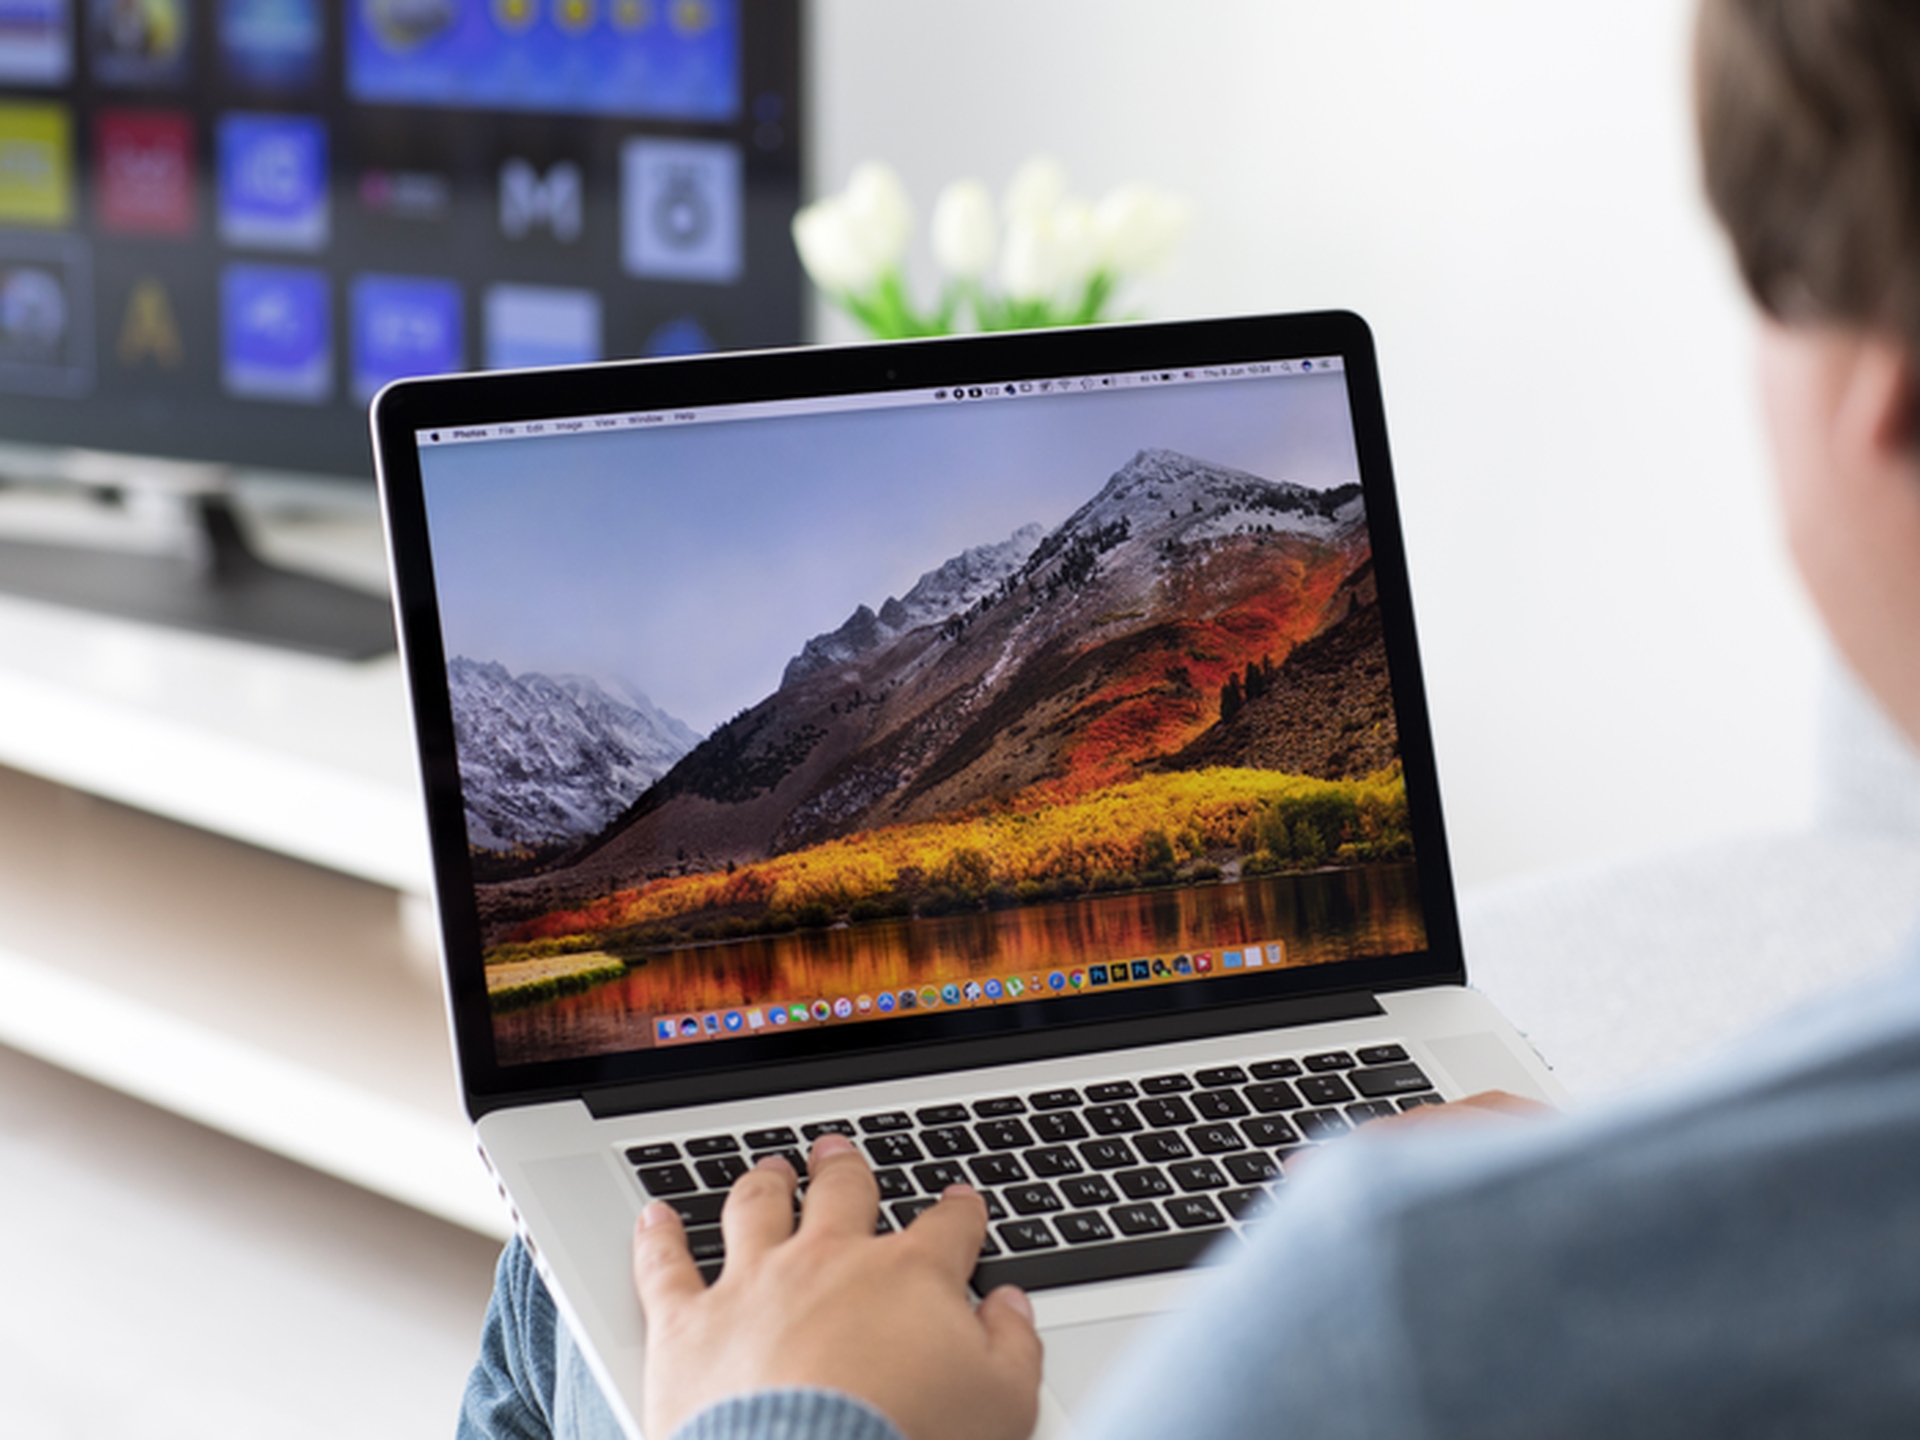 Dans cet article, nous allons expliquer comment effectuer un zoom arrière sur un Mac de différentes manières, afin que vous puissiez en trouver un qui correspond à vos besoins et l'utiliser.